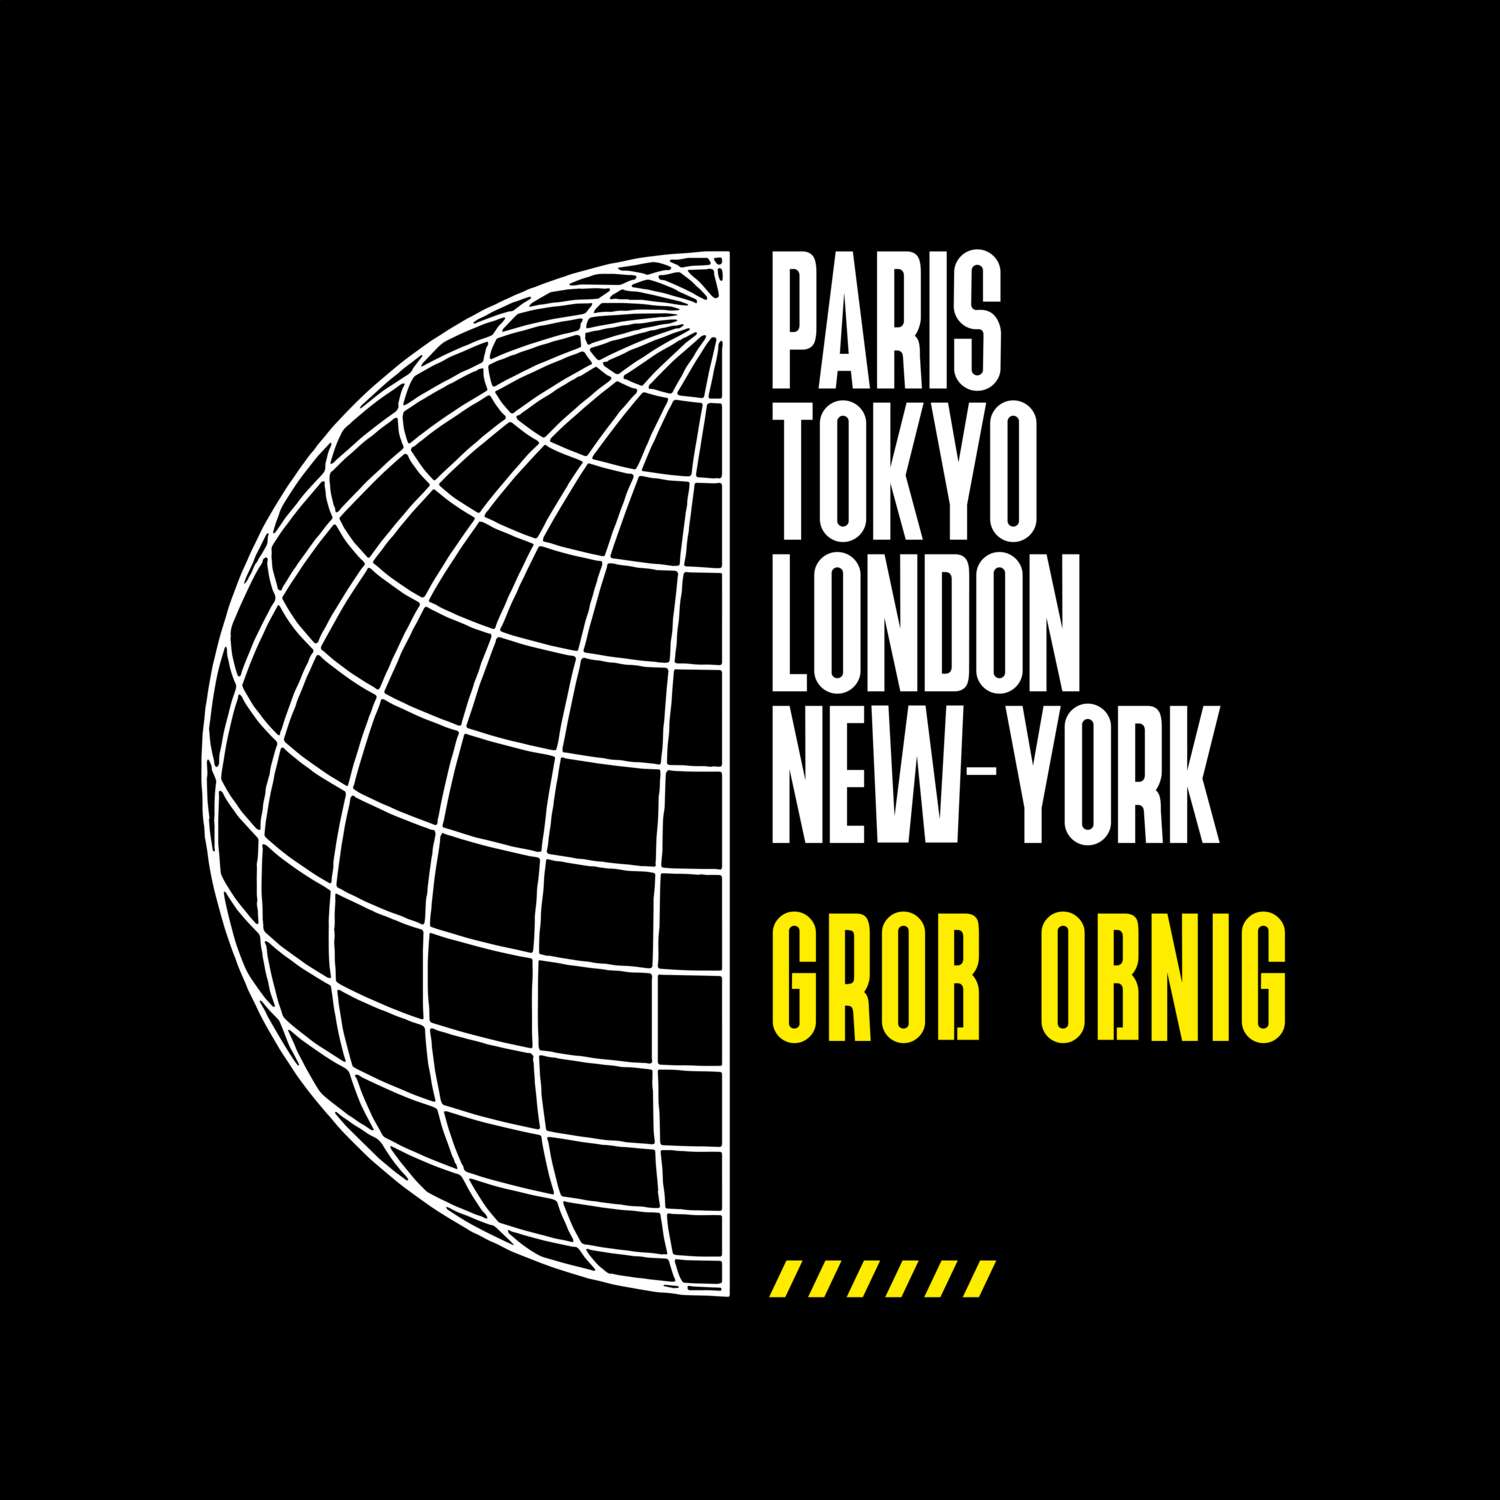 Groß Oßnig T-Shirt »Paris Tokyo London«